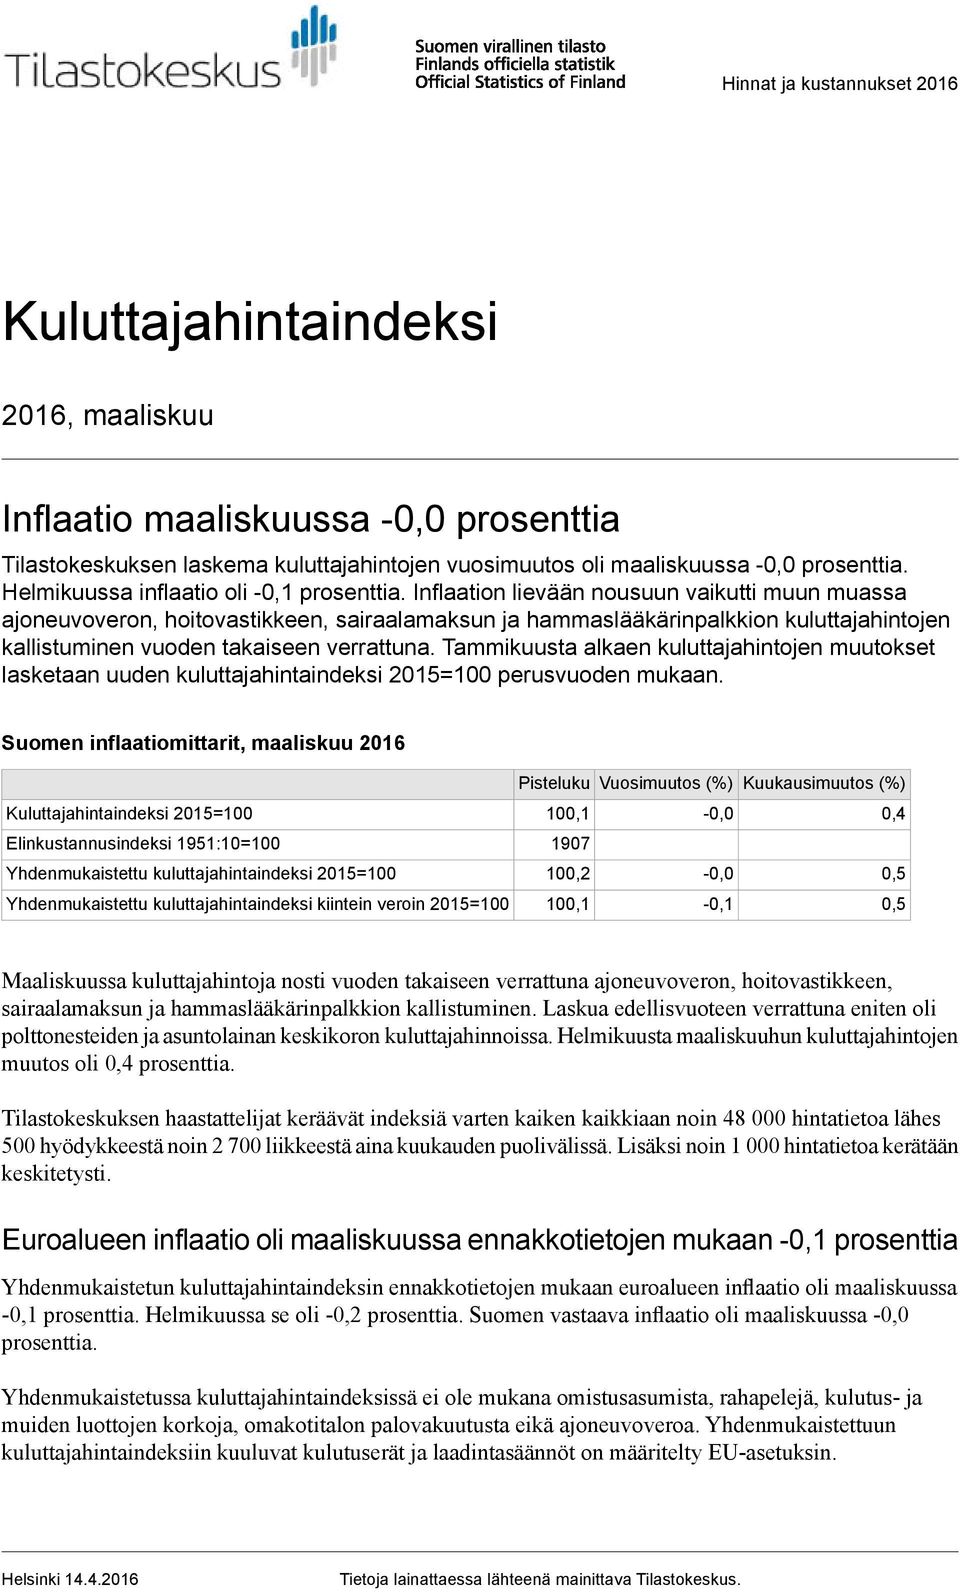 takaiseen verrattuna Tammikuusta alkaen kuluttajahintojen muutokset lasketaan uuden kuluttajahintaindeksi 2015=100 perusvuoden mukaan Suomen inflaatiomittarit, maaliskuu 2016 Pisteluku Vuosimuutos